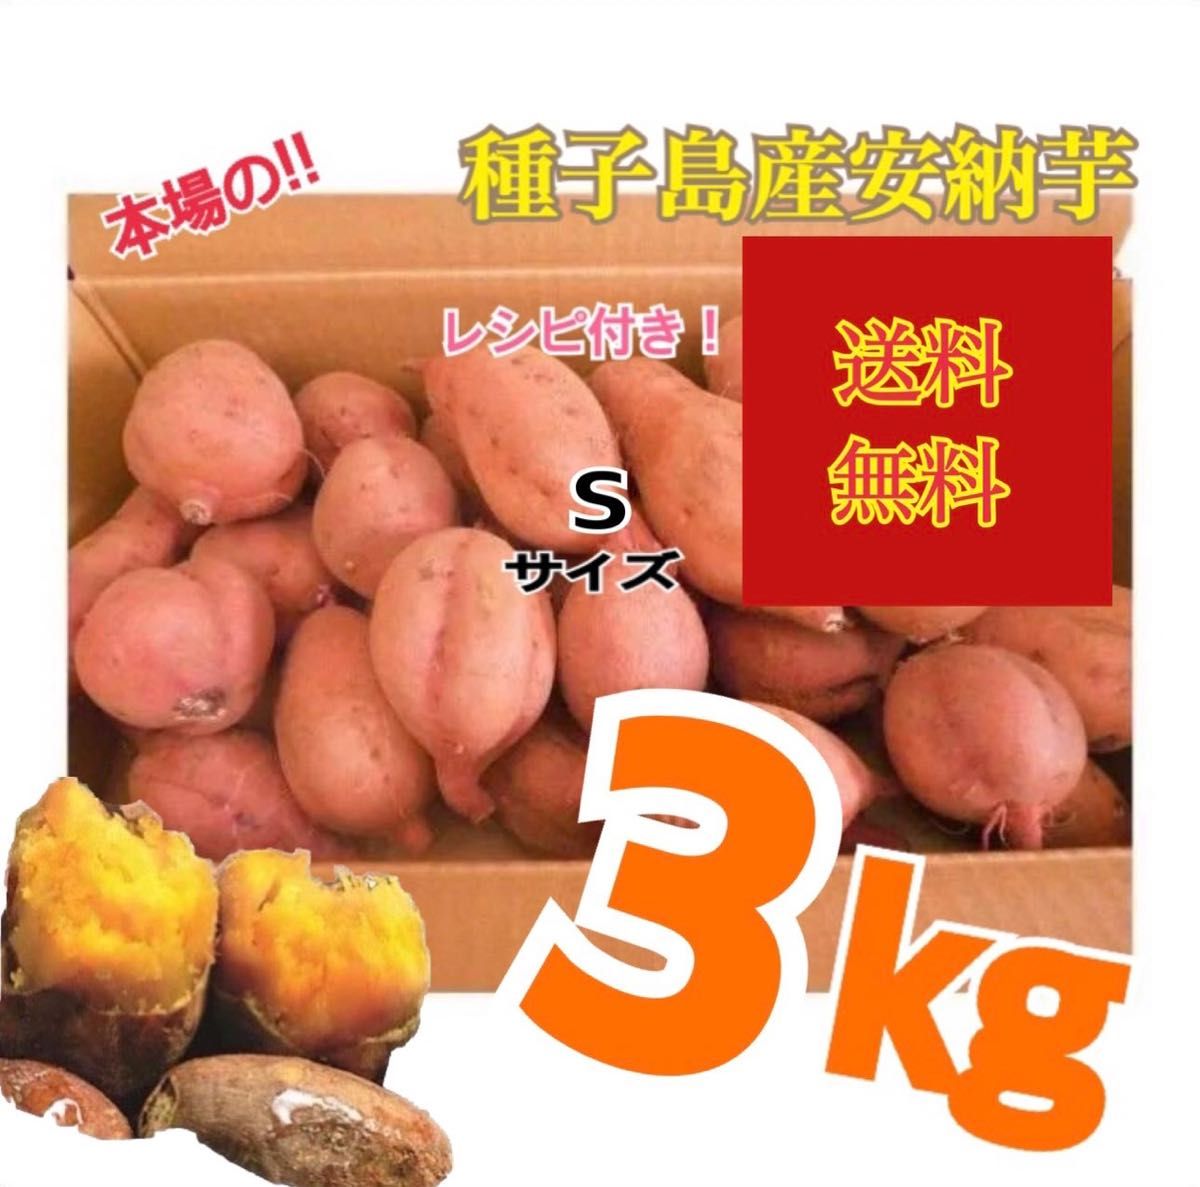 自然栽培 さつまいも新芋 佐賀県産 24キロ-